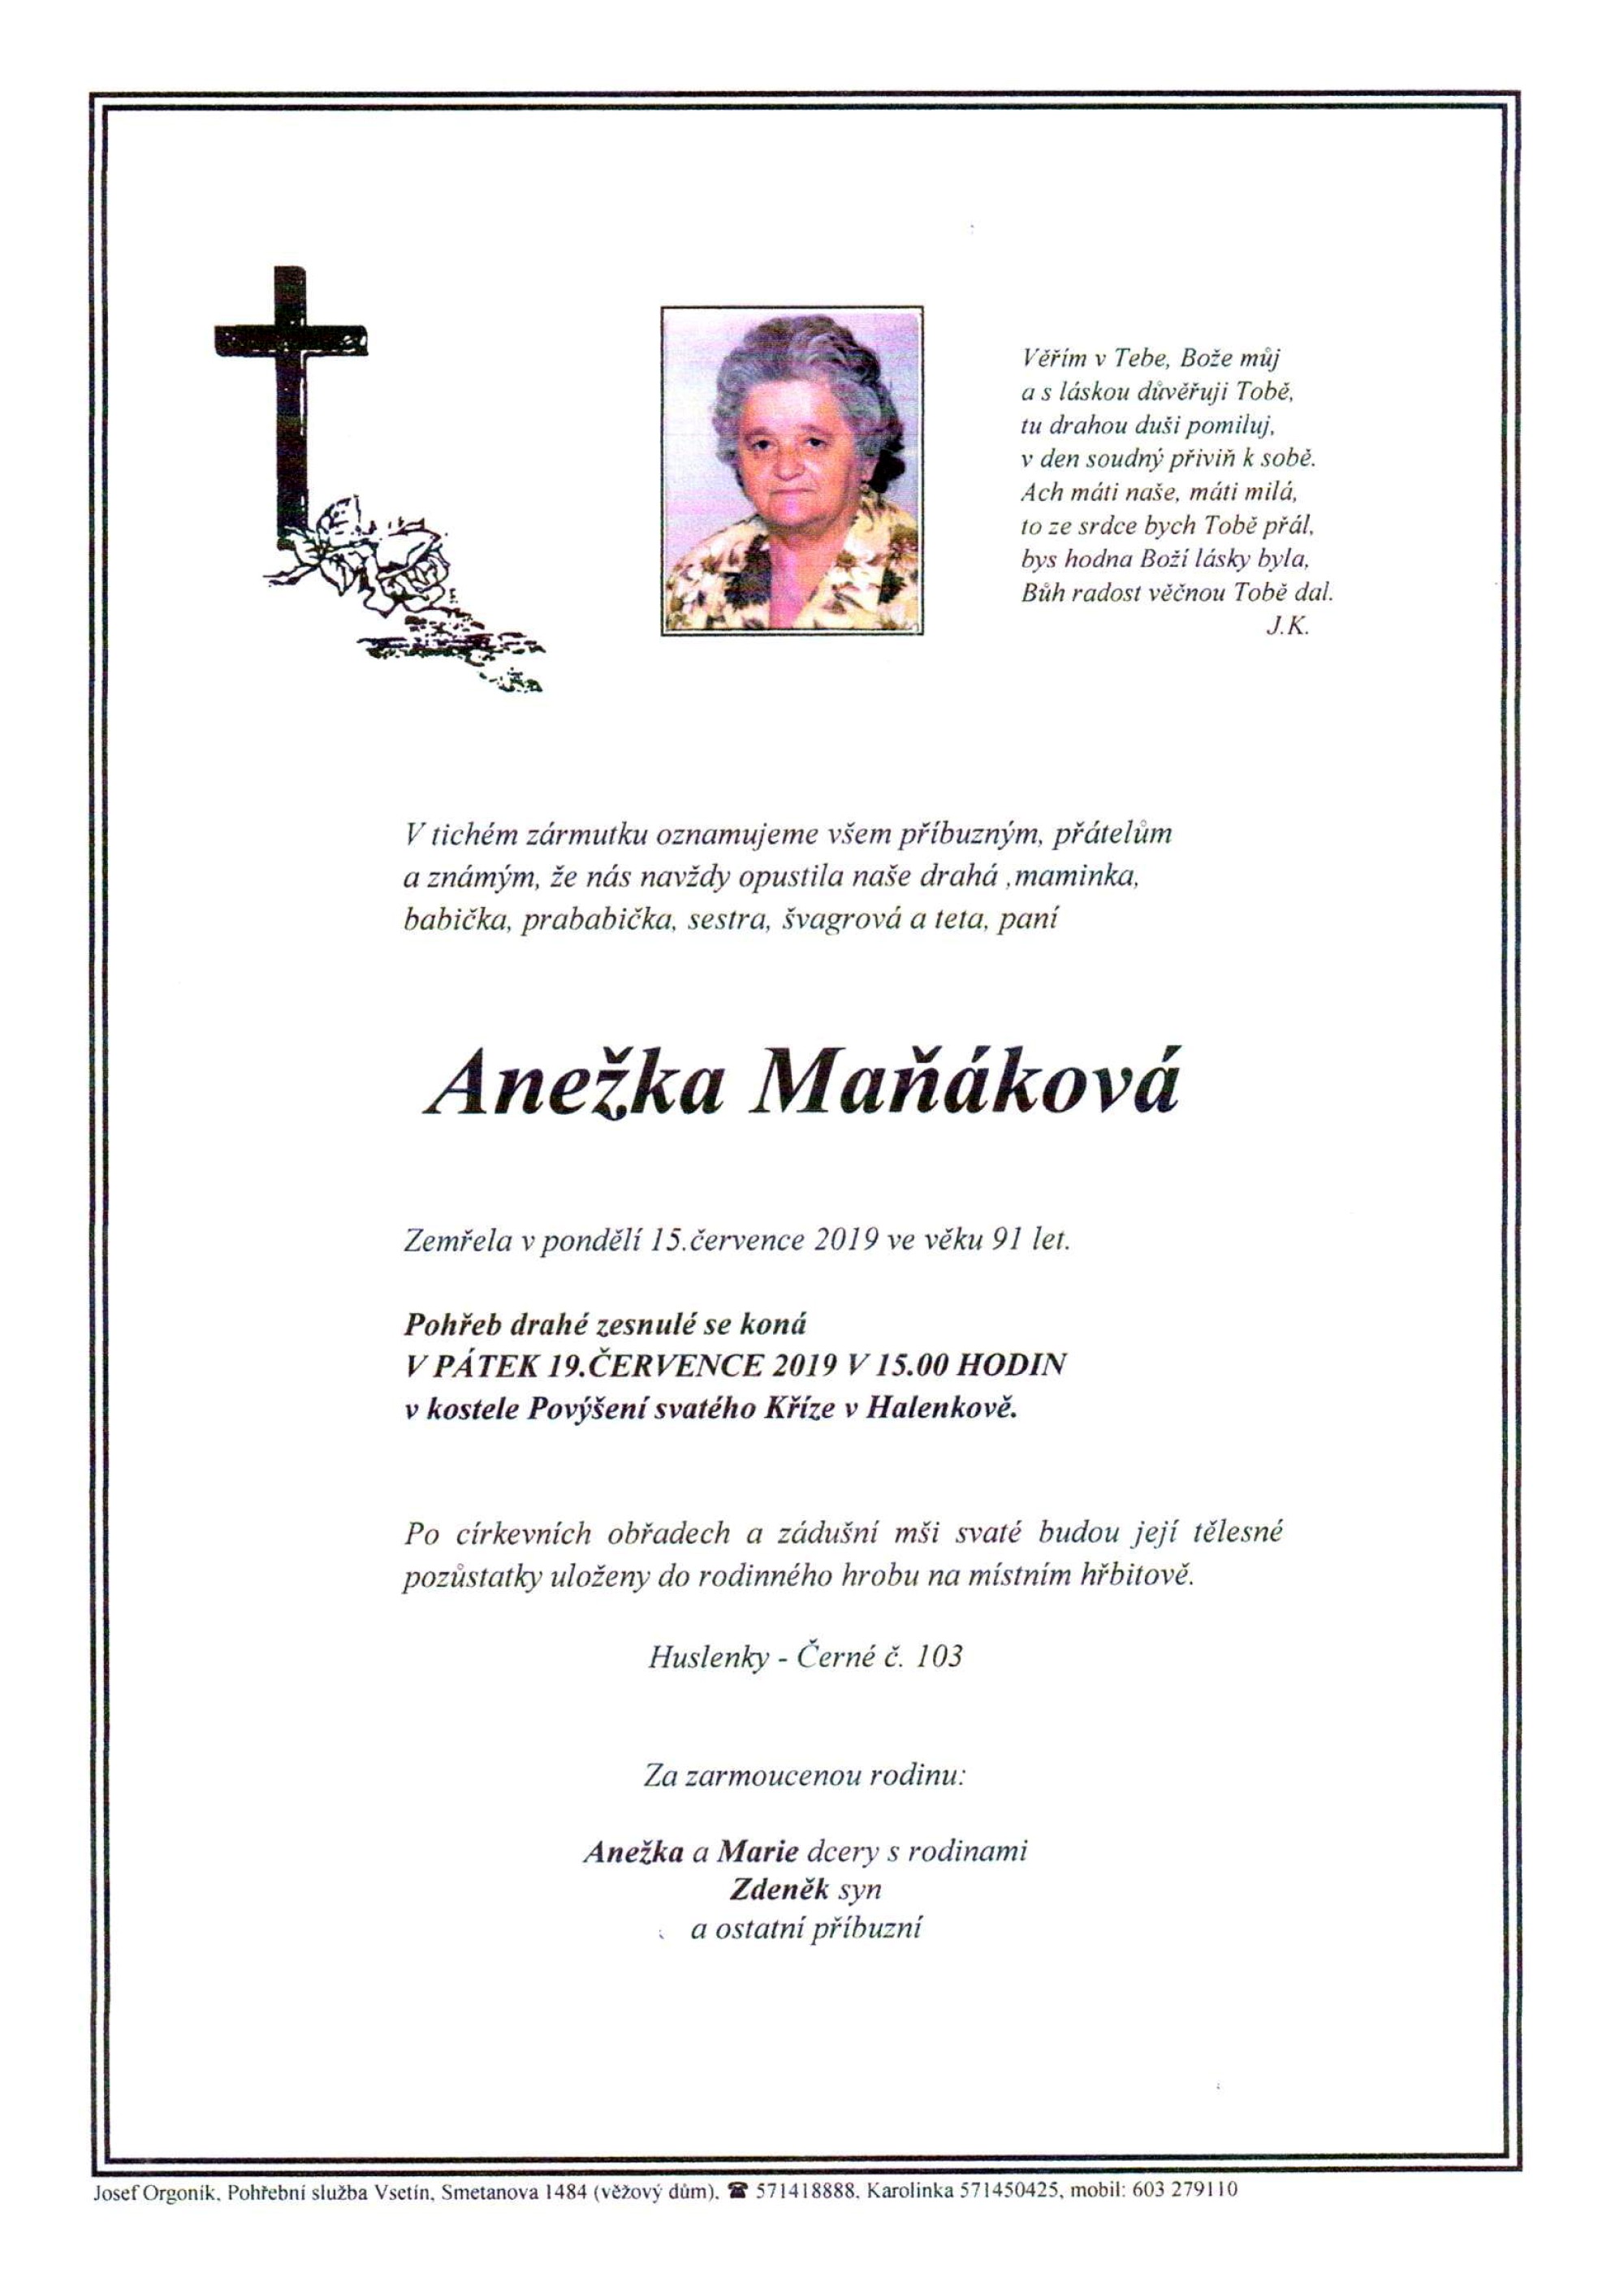 Anežka Maňáková